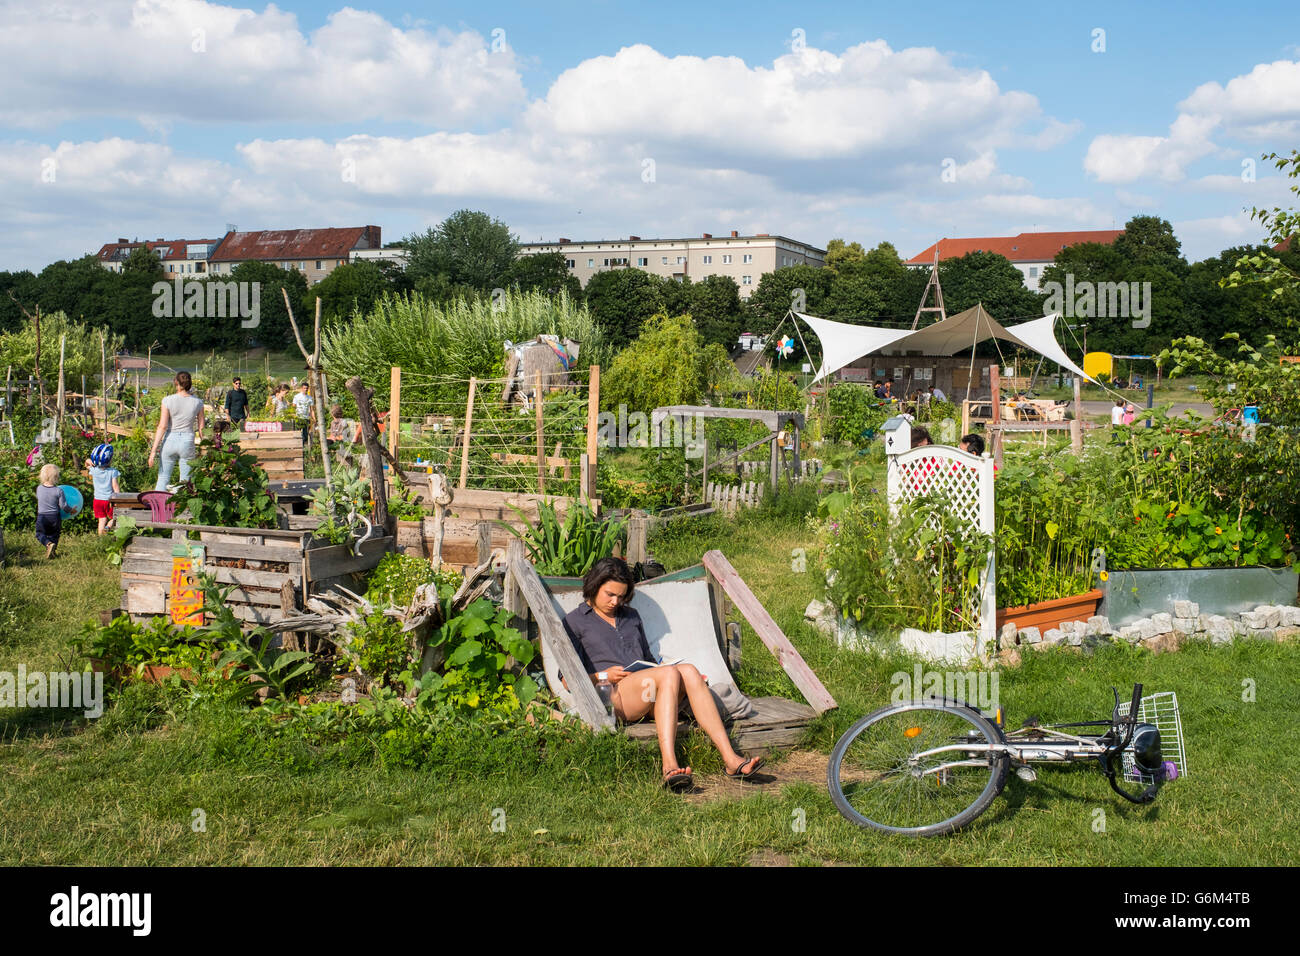 Proyecto de jardín comunitario en el parque antiguo aeropuerto Tempelhof en Berlín, Alemania Foto de stock